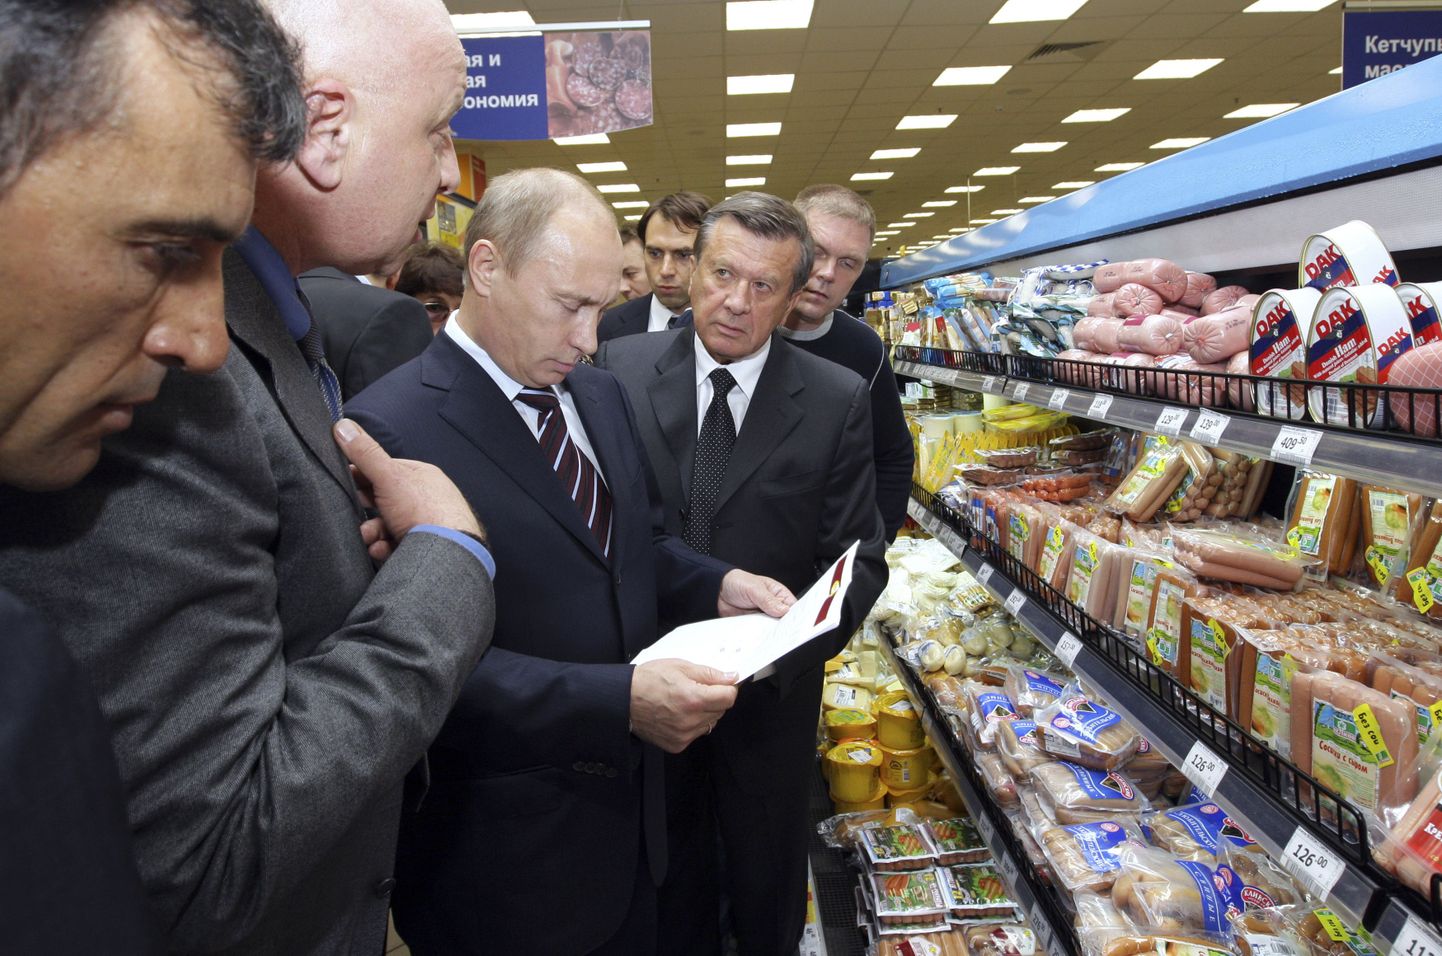 Venemaa toonane peaminister ja praegune president Vladimir Putin 2009. aasta juunis Moskva toidupoodi külastamas.